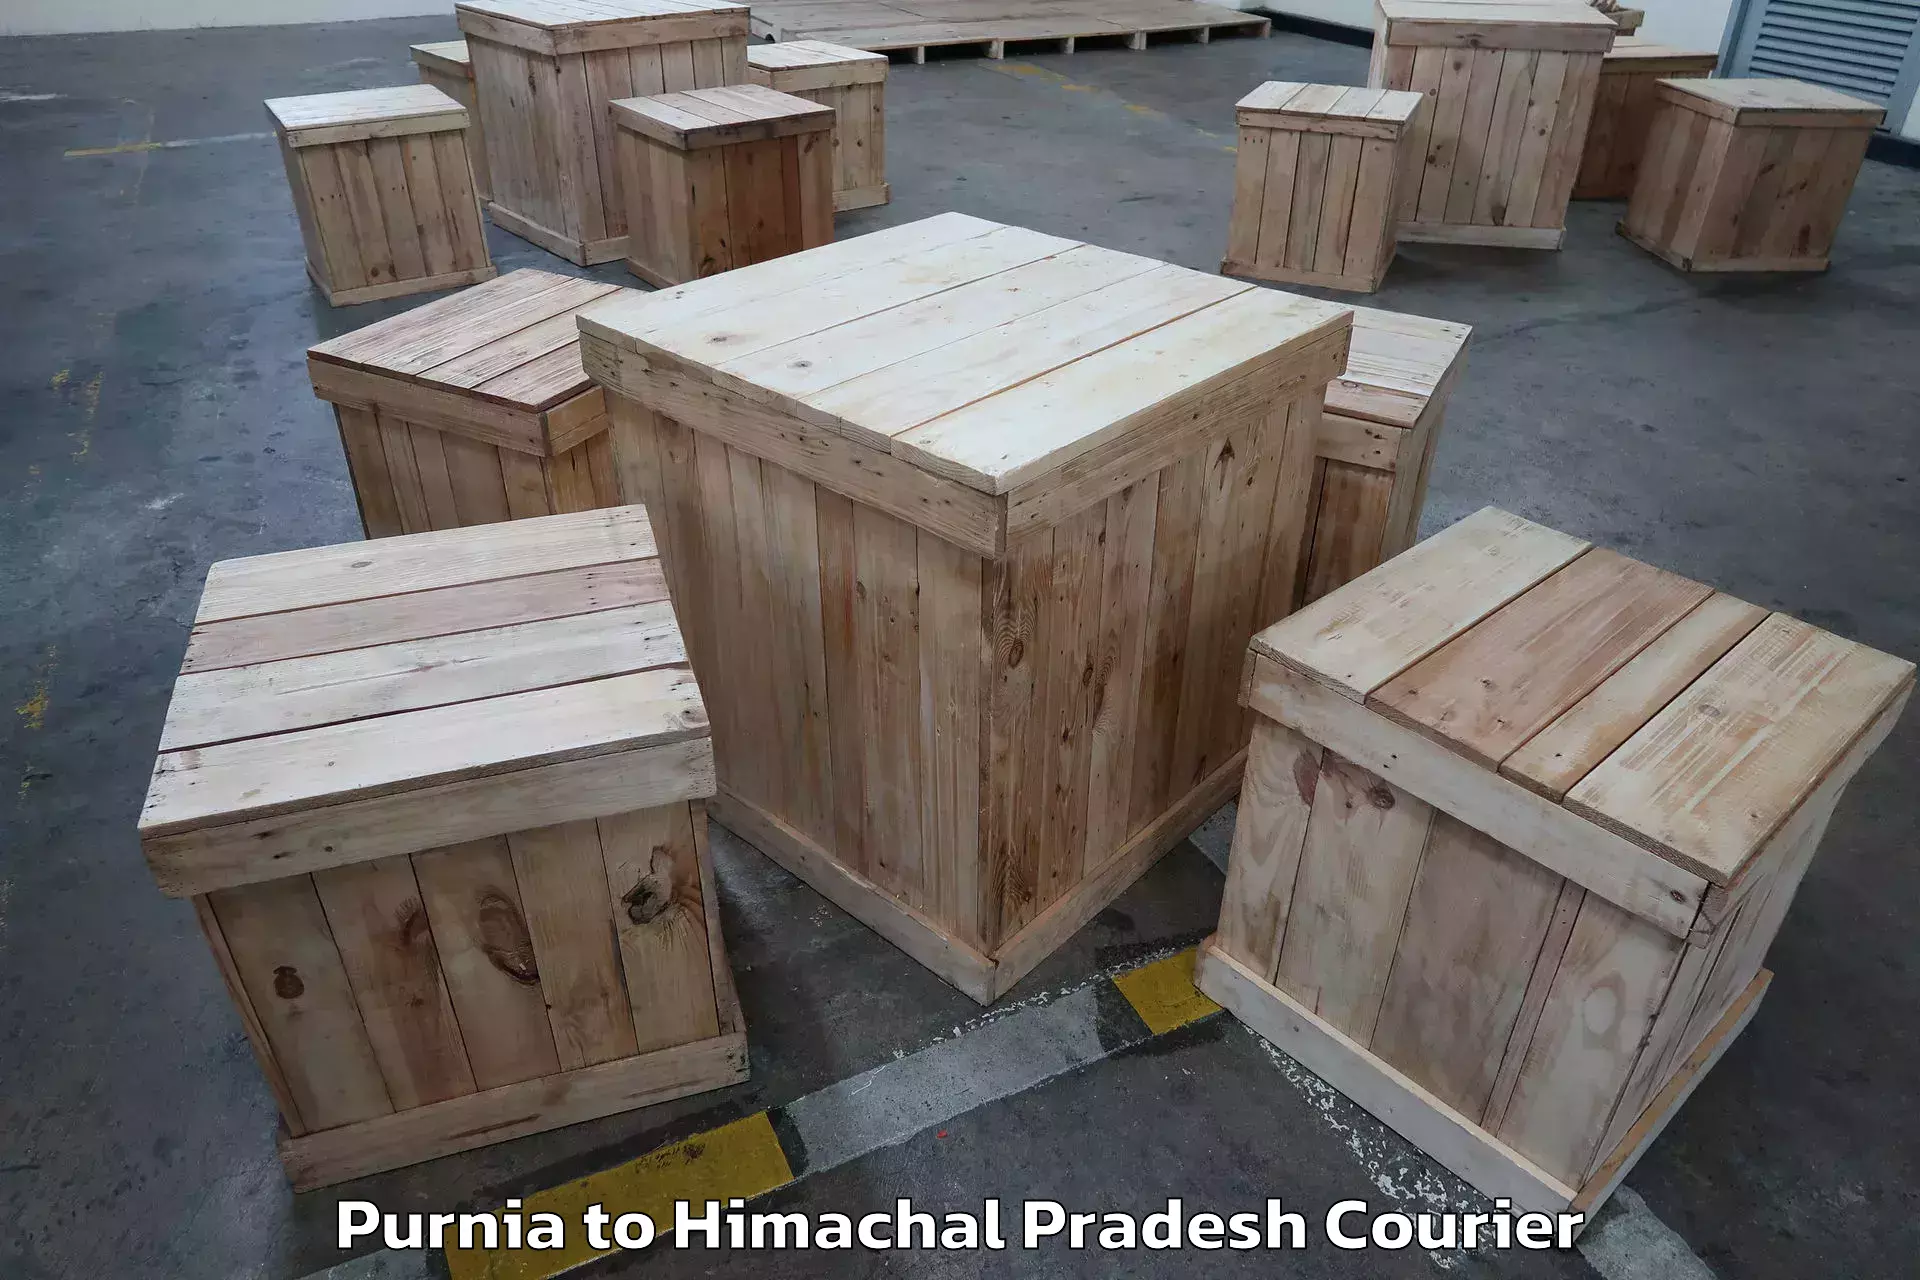 Furniture transport service Purnia to Naina Devi